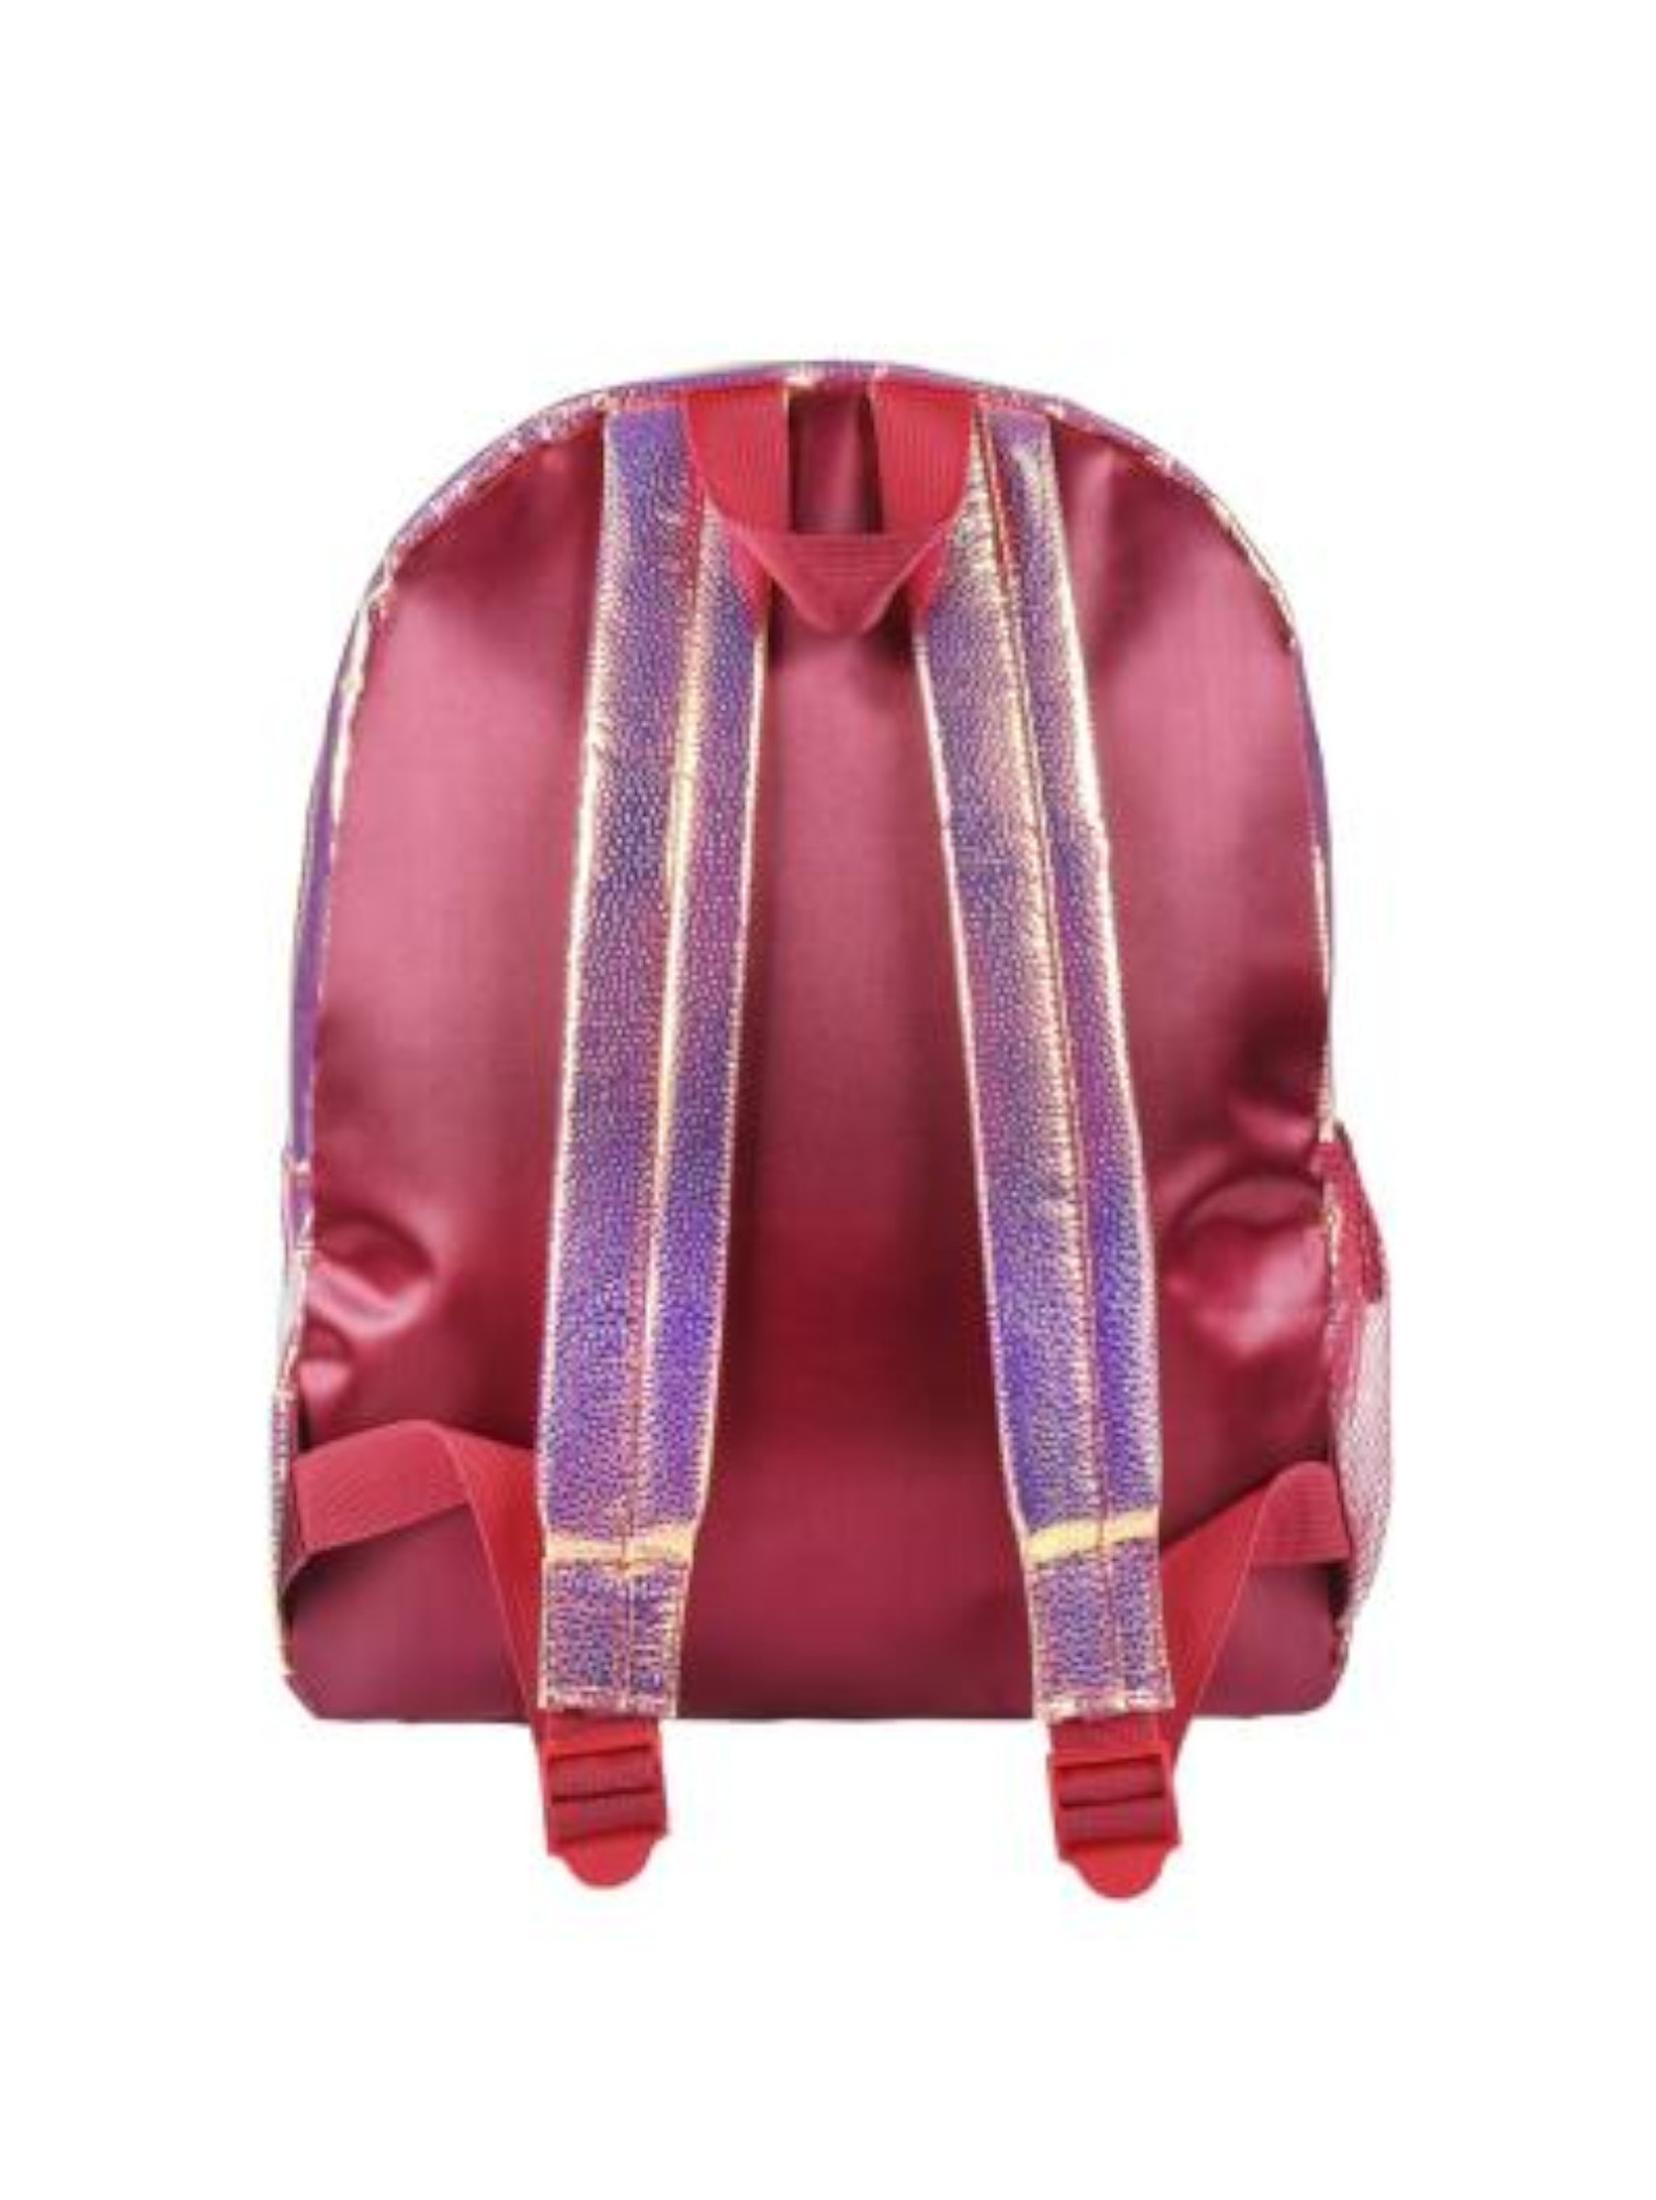 Plecak dla dziewczynki Fashion Minnie- różowy